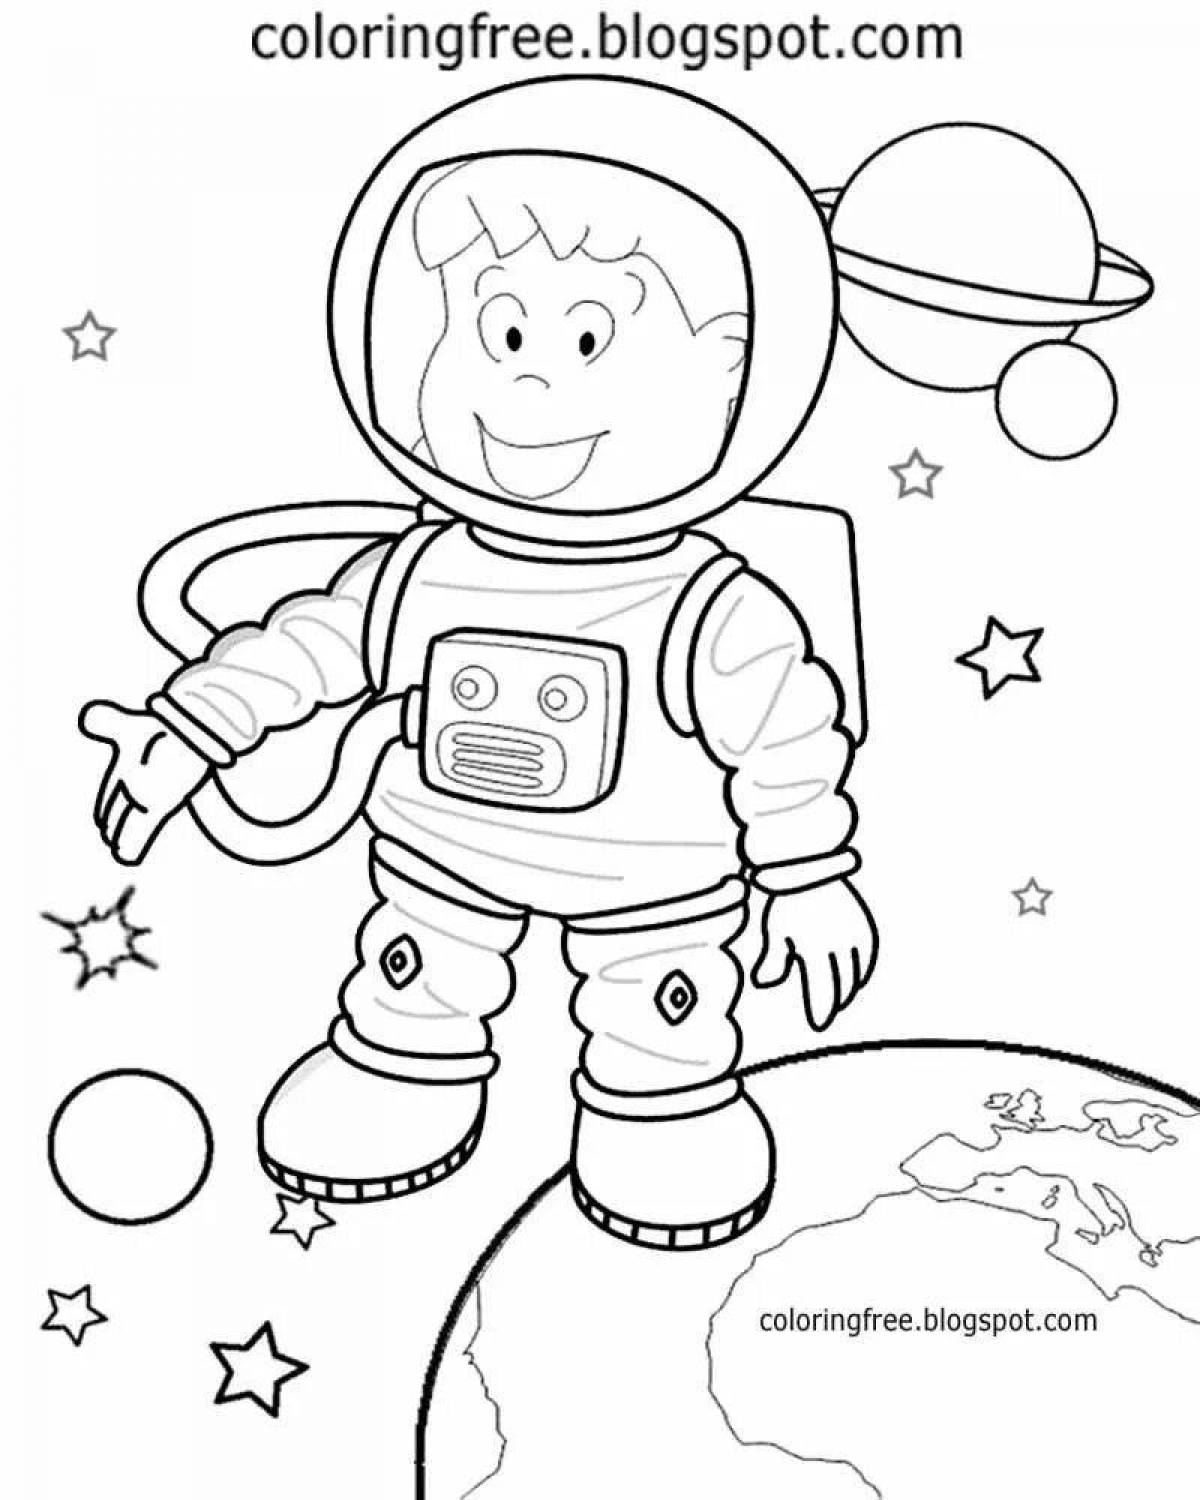 Космонавт шаблон для вырезания распечатать. Космонавт раскраска для детей. Космос раскраска для детей. Раскраска для малышей. Космос. Космонавт раскраска для малышей.